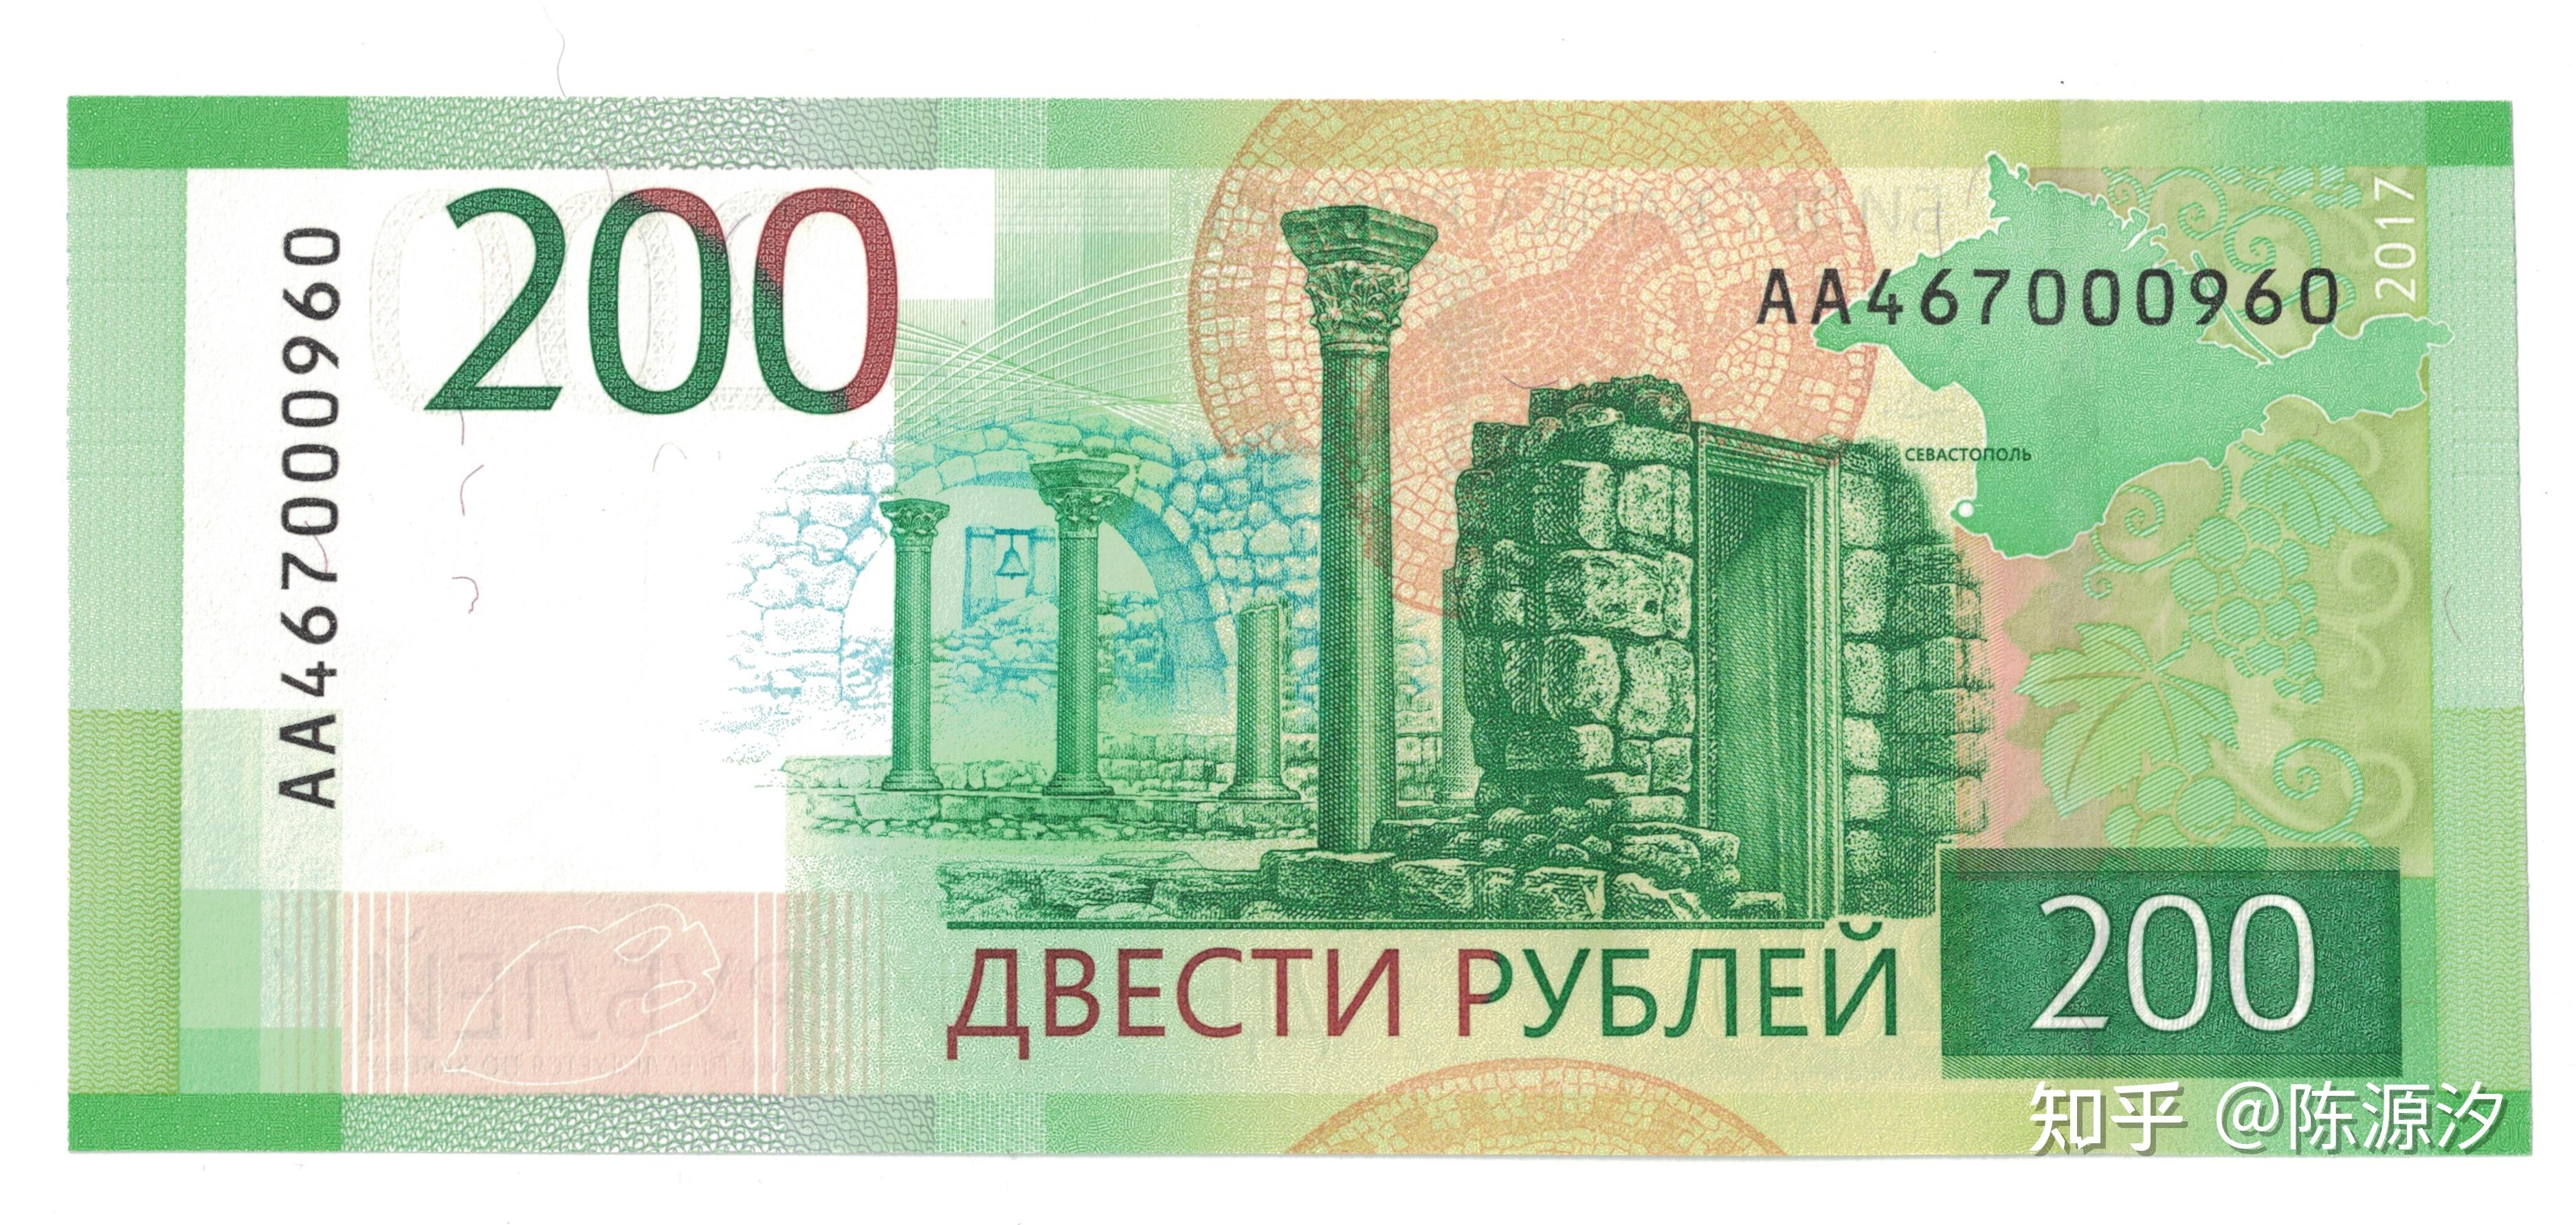 俄罗斯卢布纸币介绍1997年今